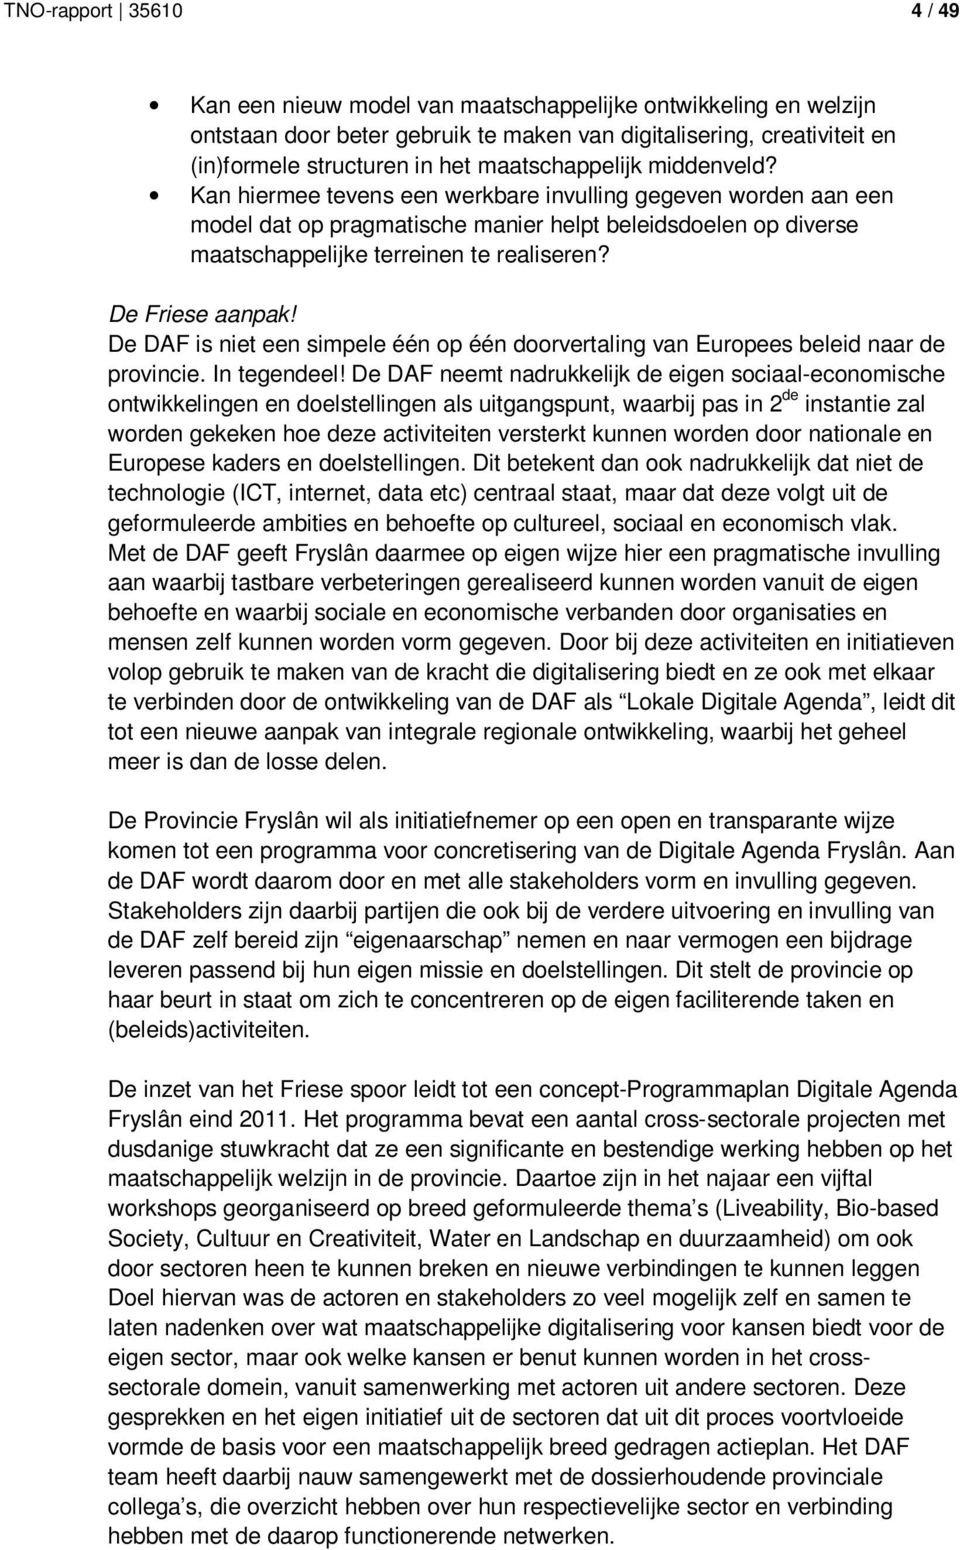 De Friese aanpak! De DAF is niet een simpele één op één doorvertaling van Europees beleid naar de provincie. In tegendeel!